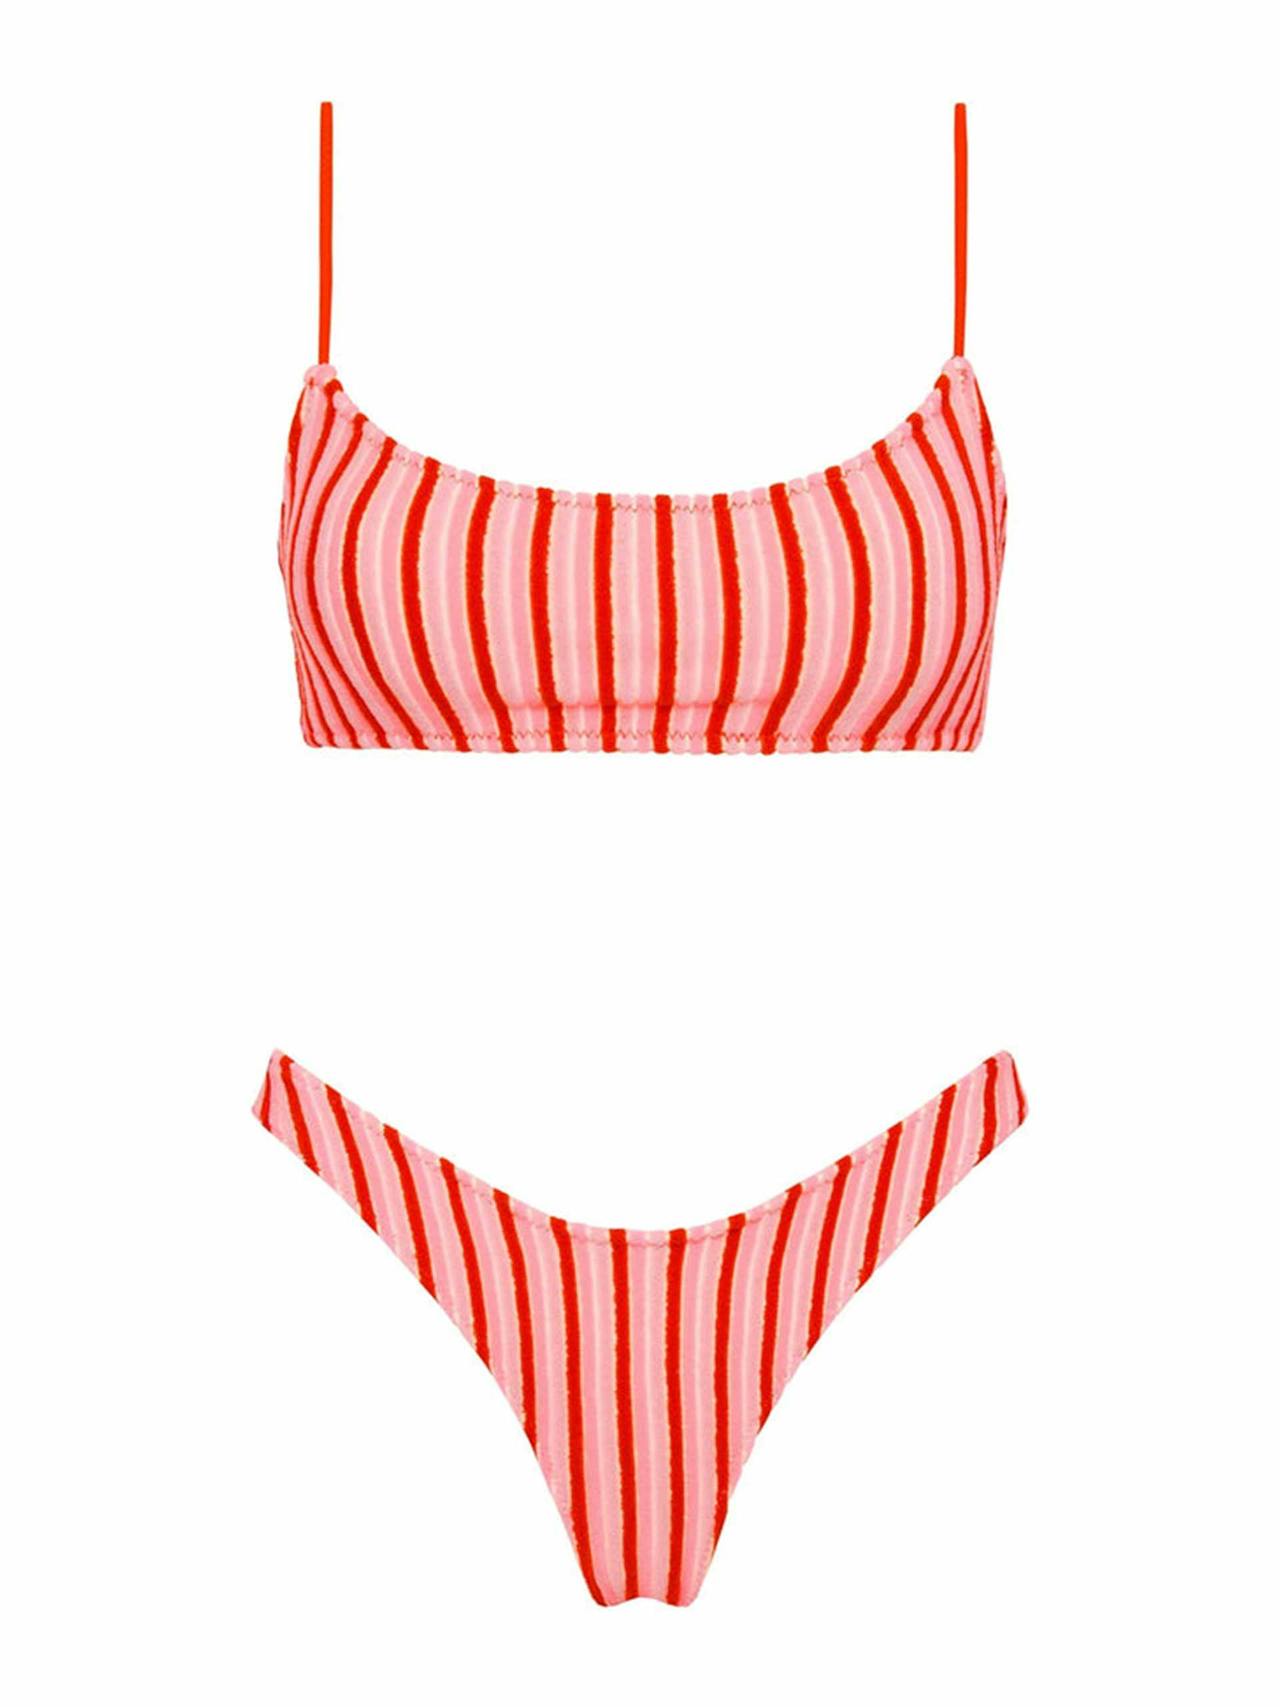 Pink & red striped bikini